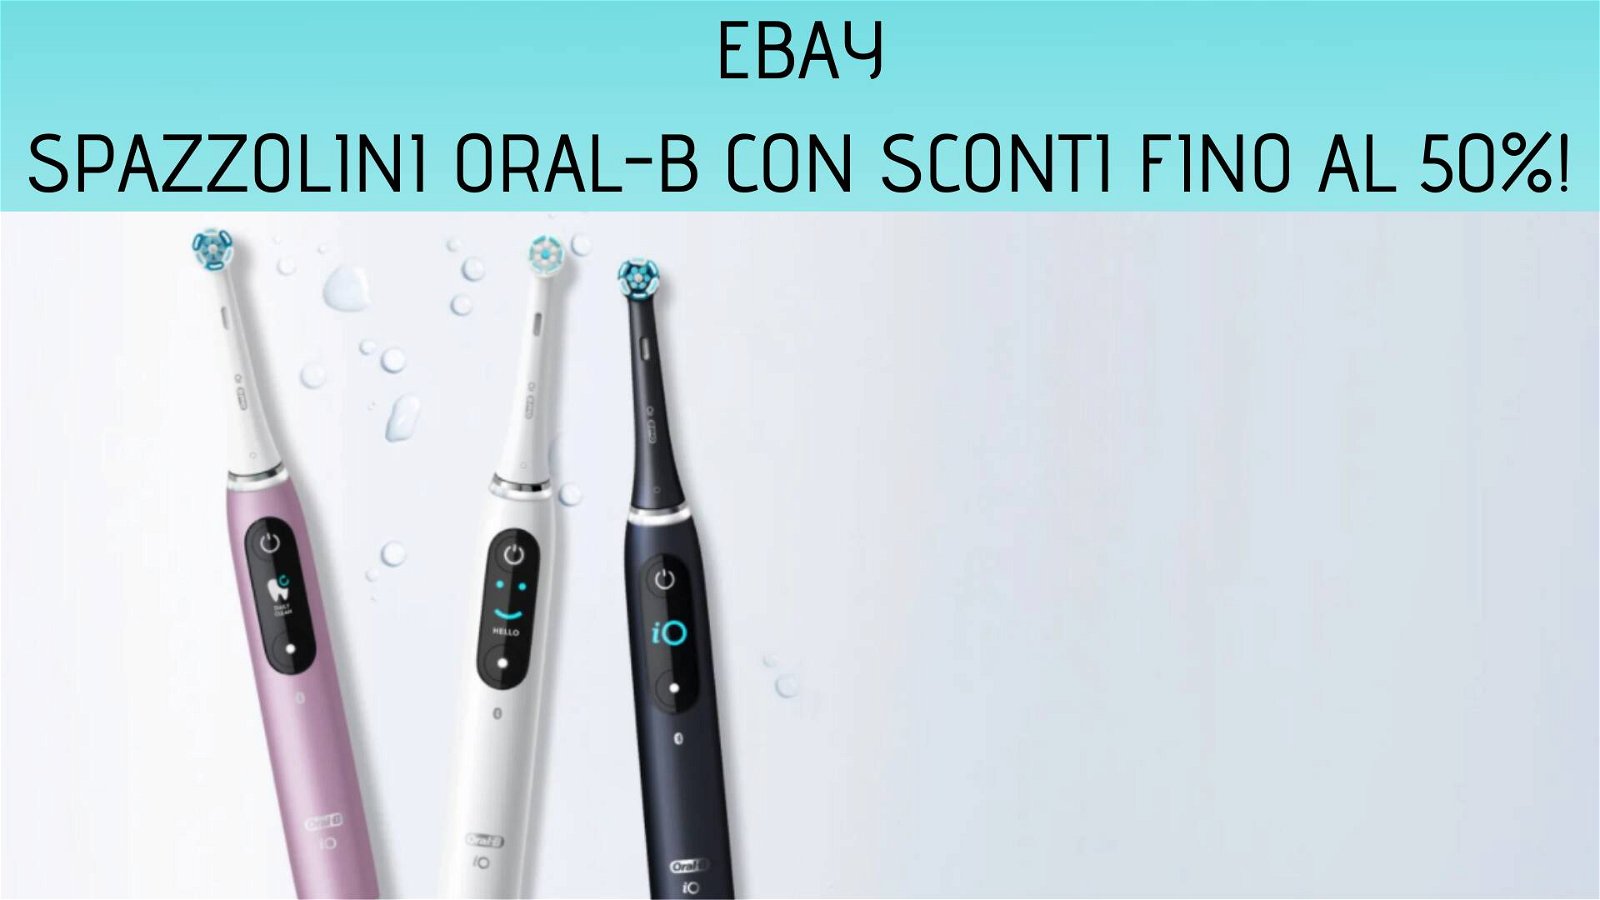 Immagine di eBay: sconti fino al 50% sugli spazzolini Oral-B